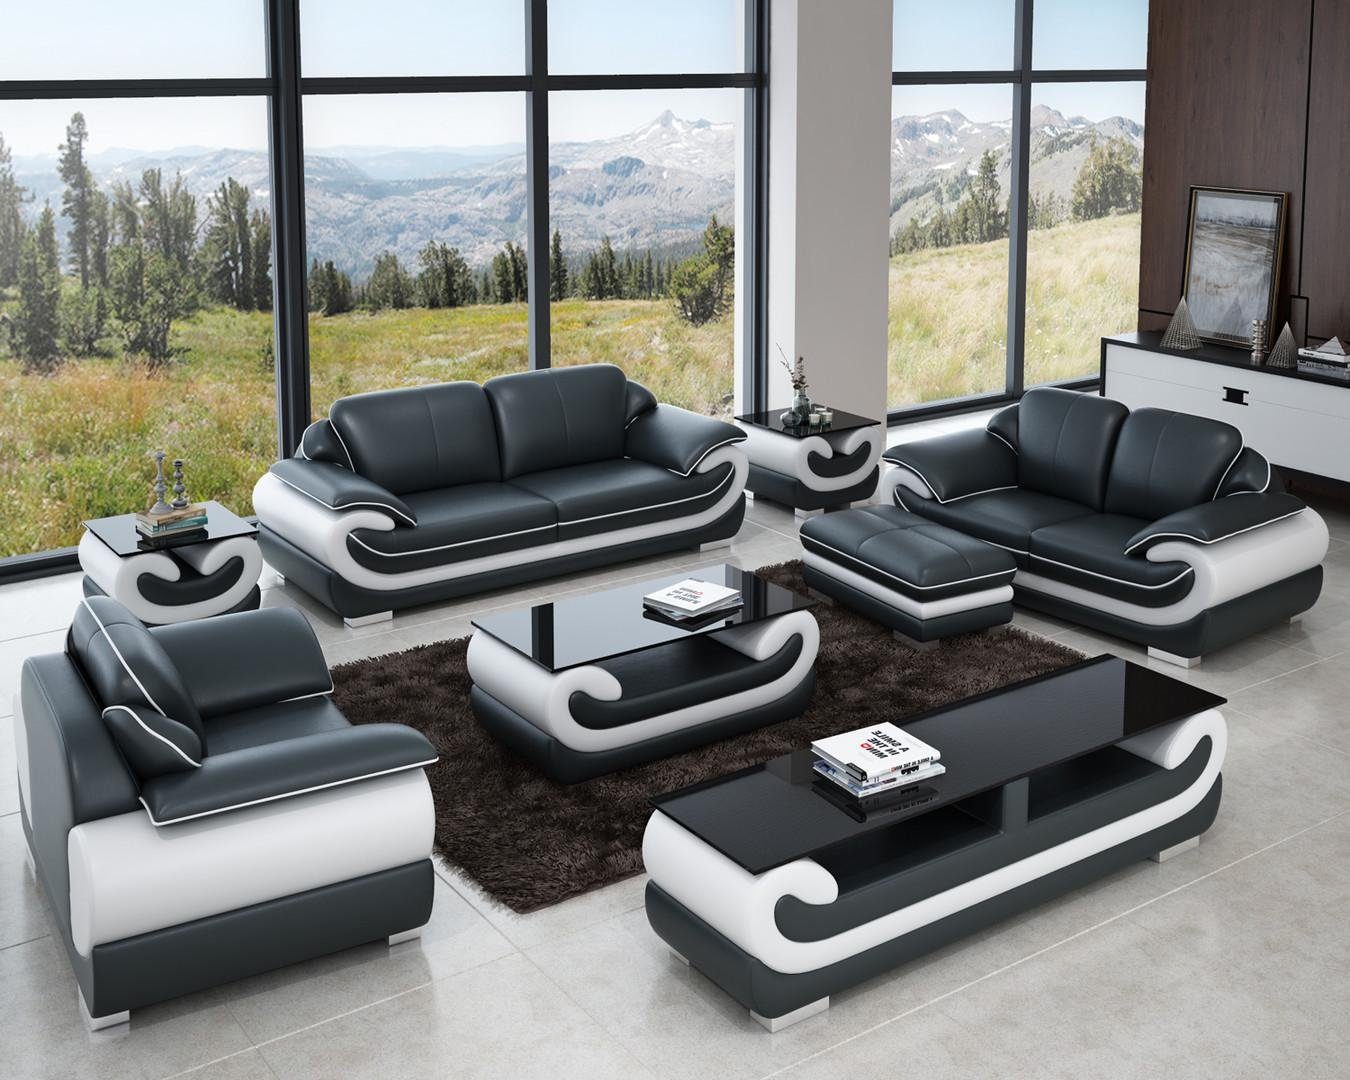 JVmoebel Wohnzimmer-Set Sofagarnitur 3+2+1 Sitzer 2x Beistelltisch Sideboard Hocker 7tlg.Set Grau/Weiß